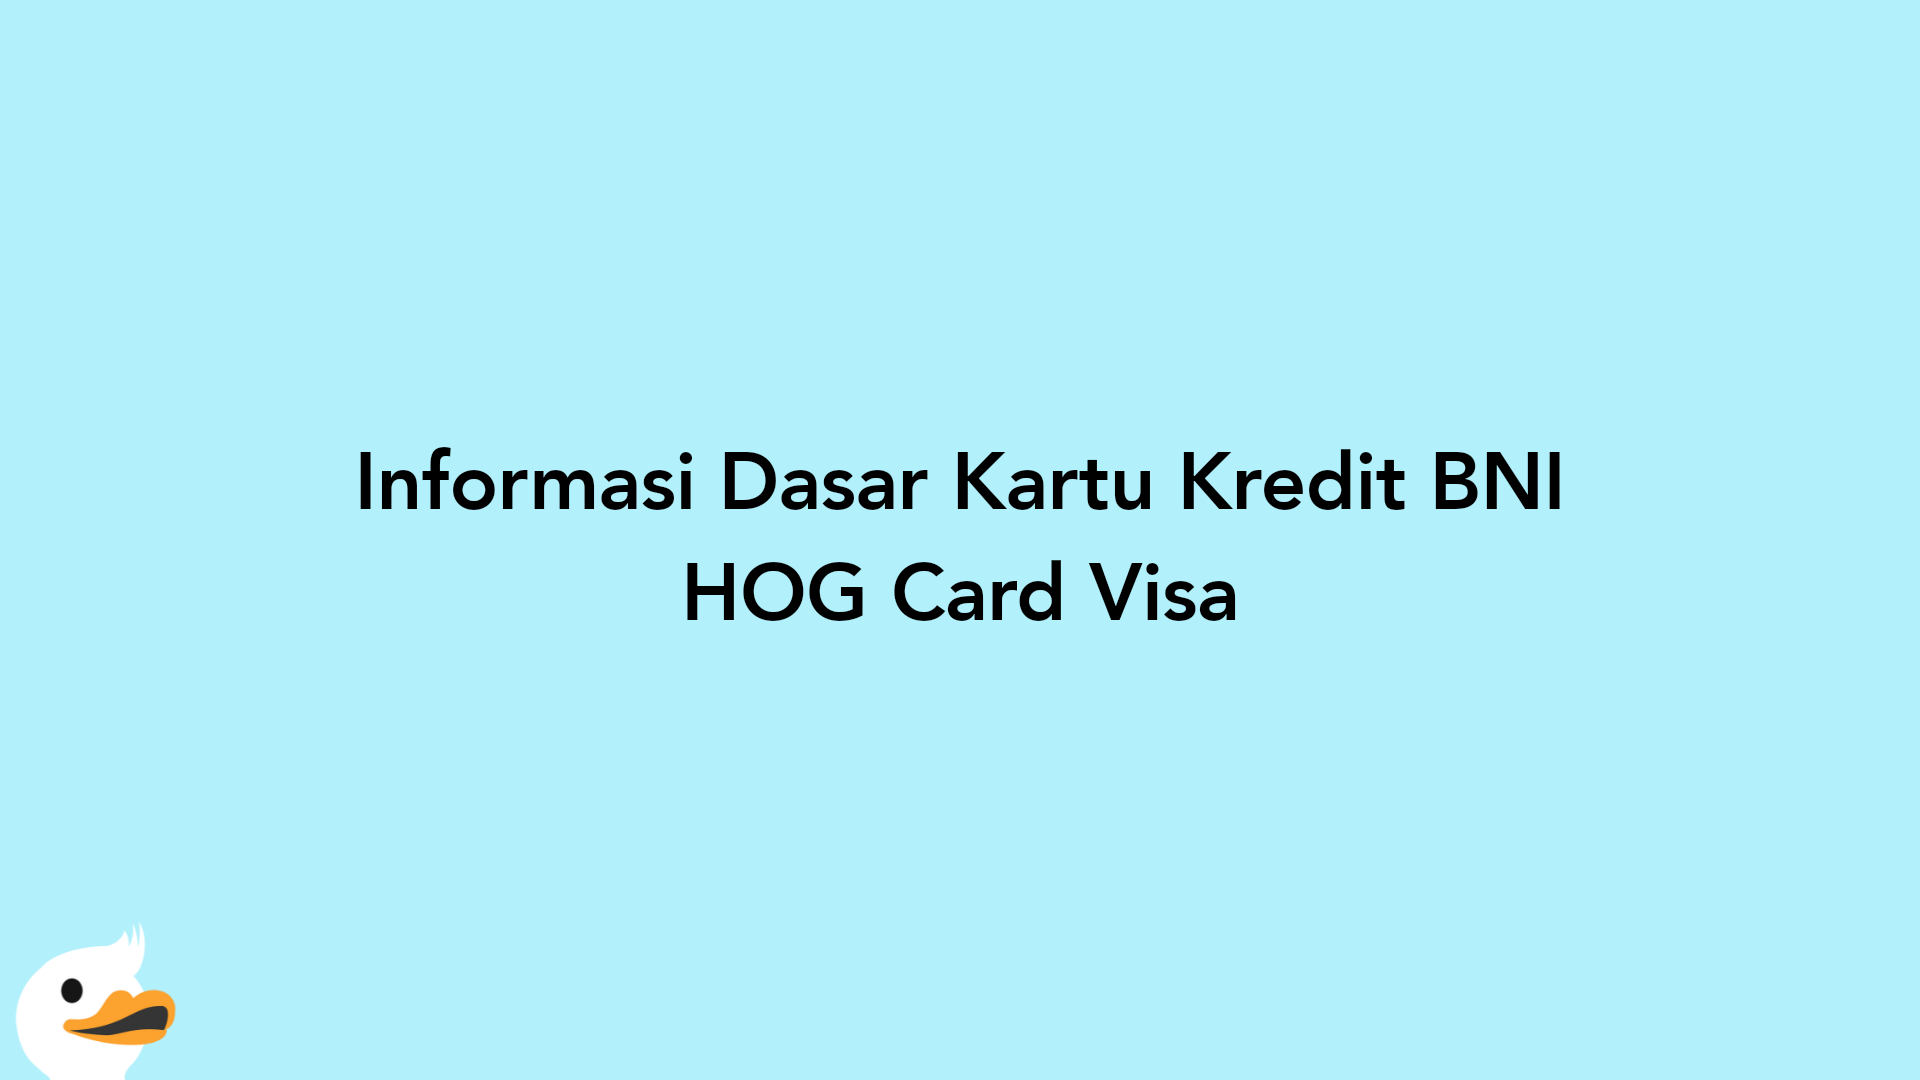 Informasi Dasar Kartu Kredit BNI HOG Card Visa